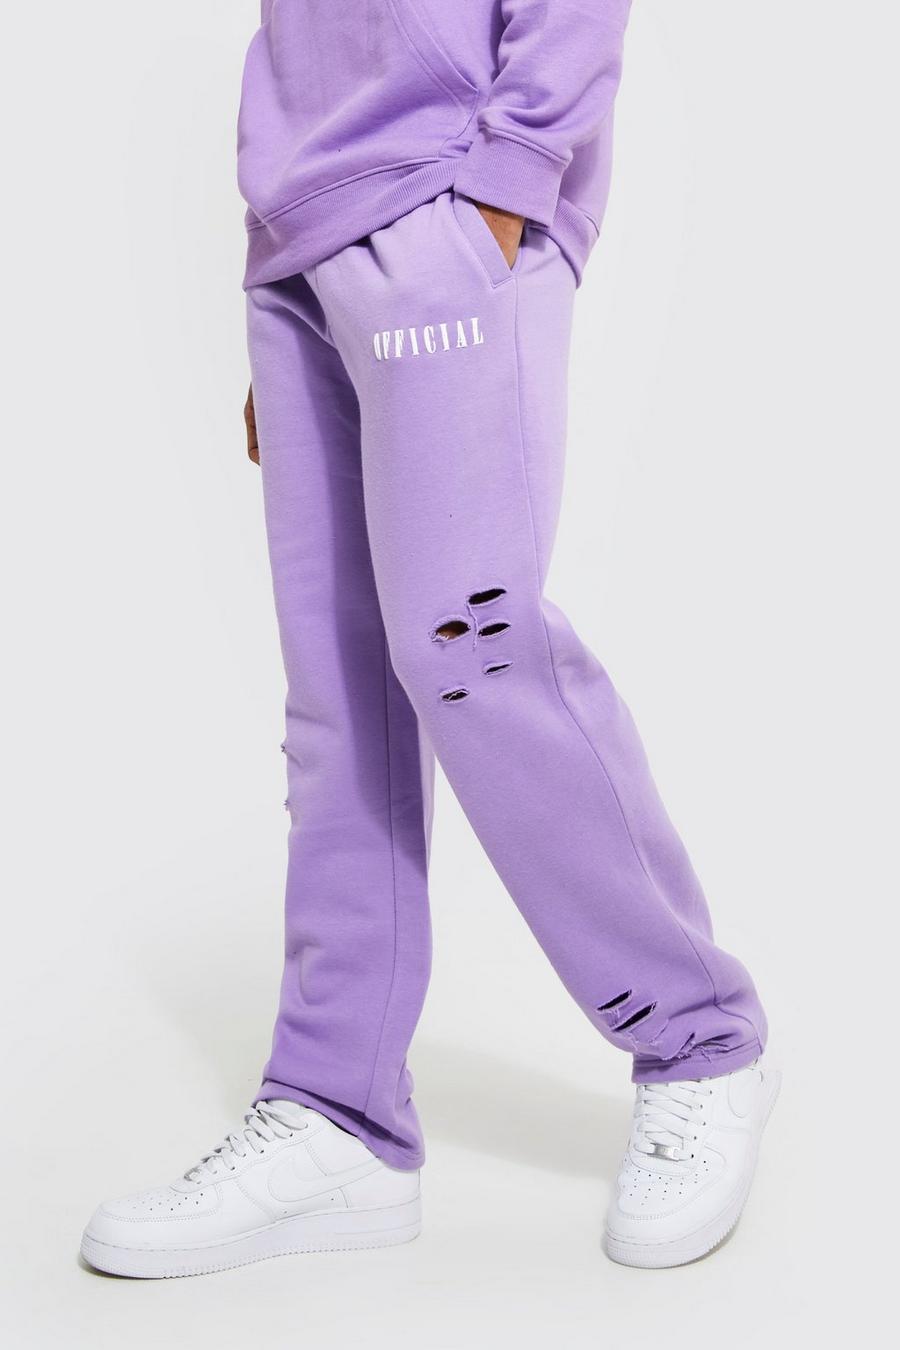 Zerrissene Oversize Official Jogginghose mit weitem Bein, Lilac violet